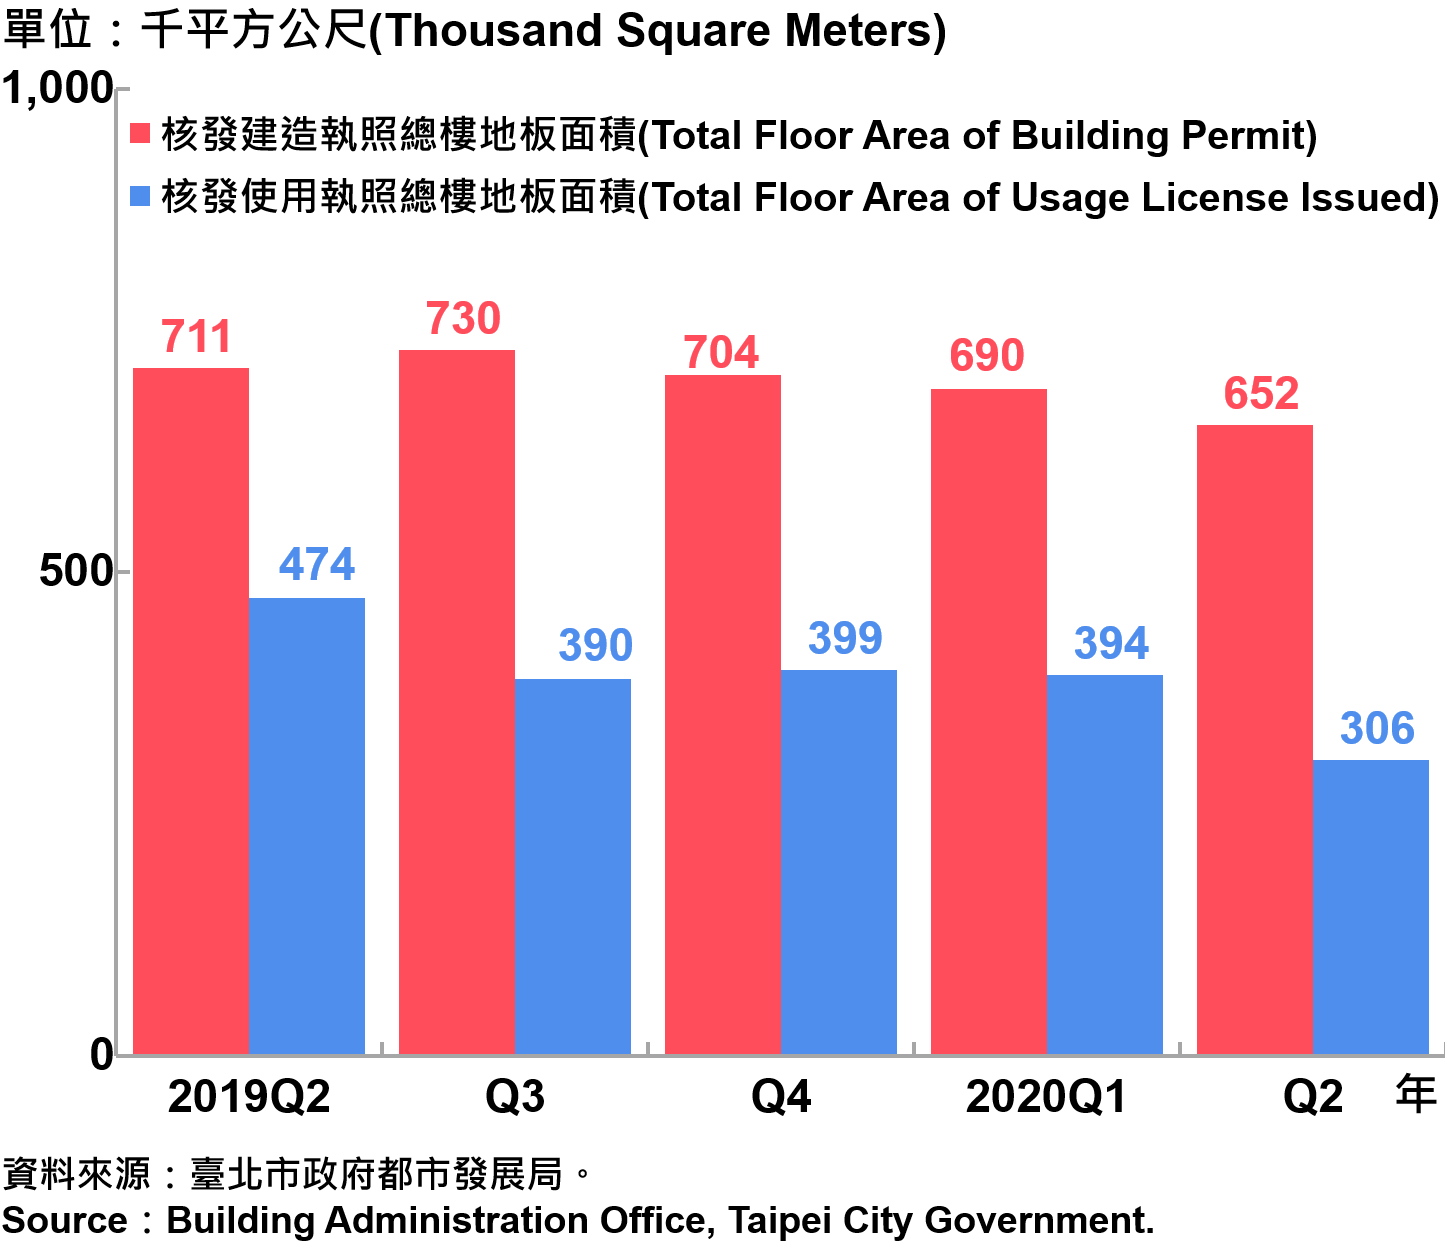 臺北市核發建築物執照與使用執照總樓地板面積—2020Q2 Building with Newly Construction and Using Construction Permits Issued in Taipei City—2020Q2